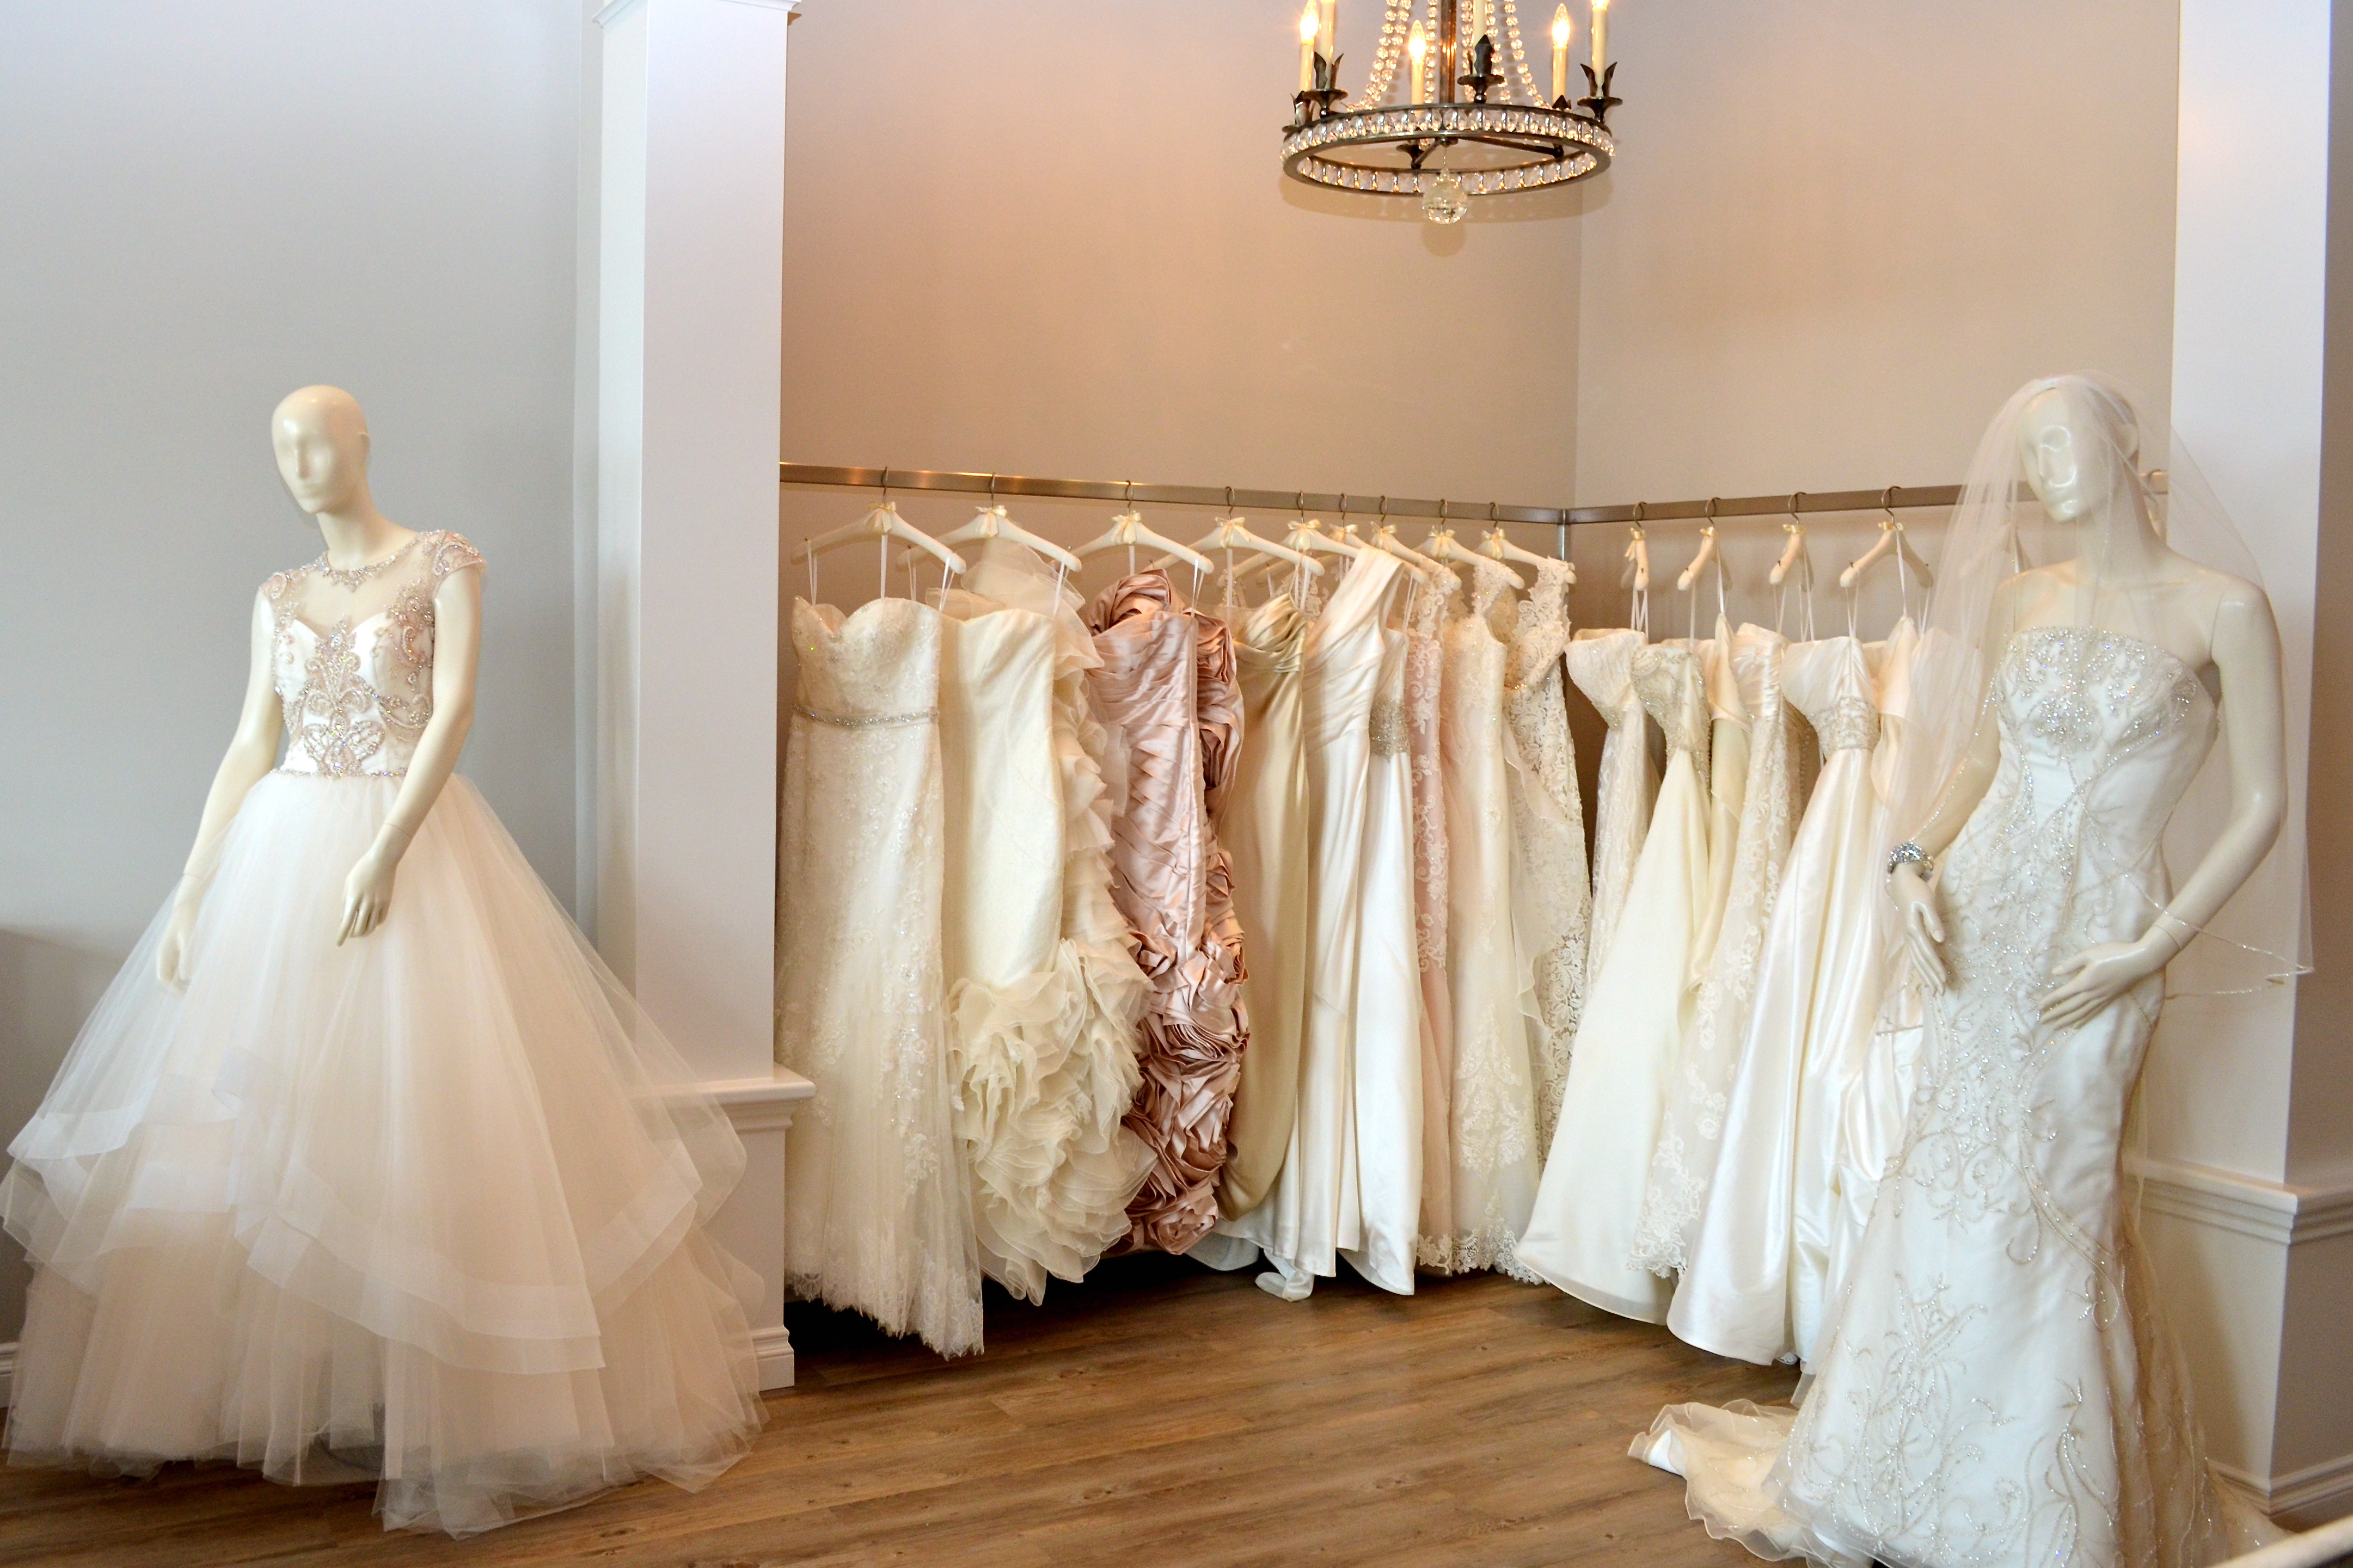 Say Yes to the Dress at Casablanca Bridal